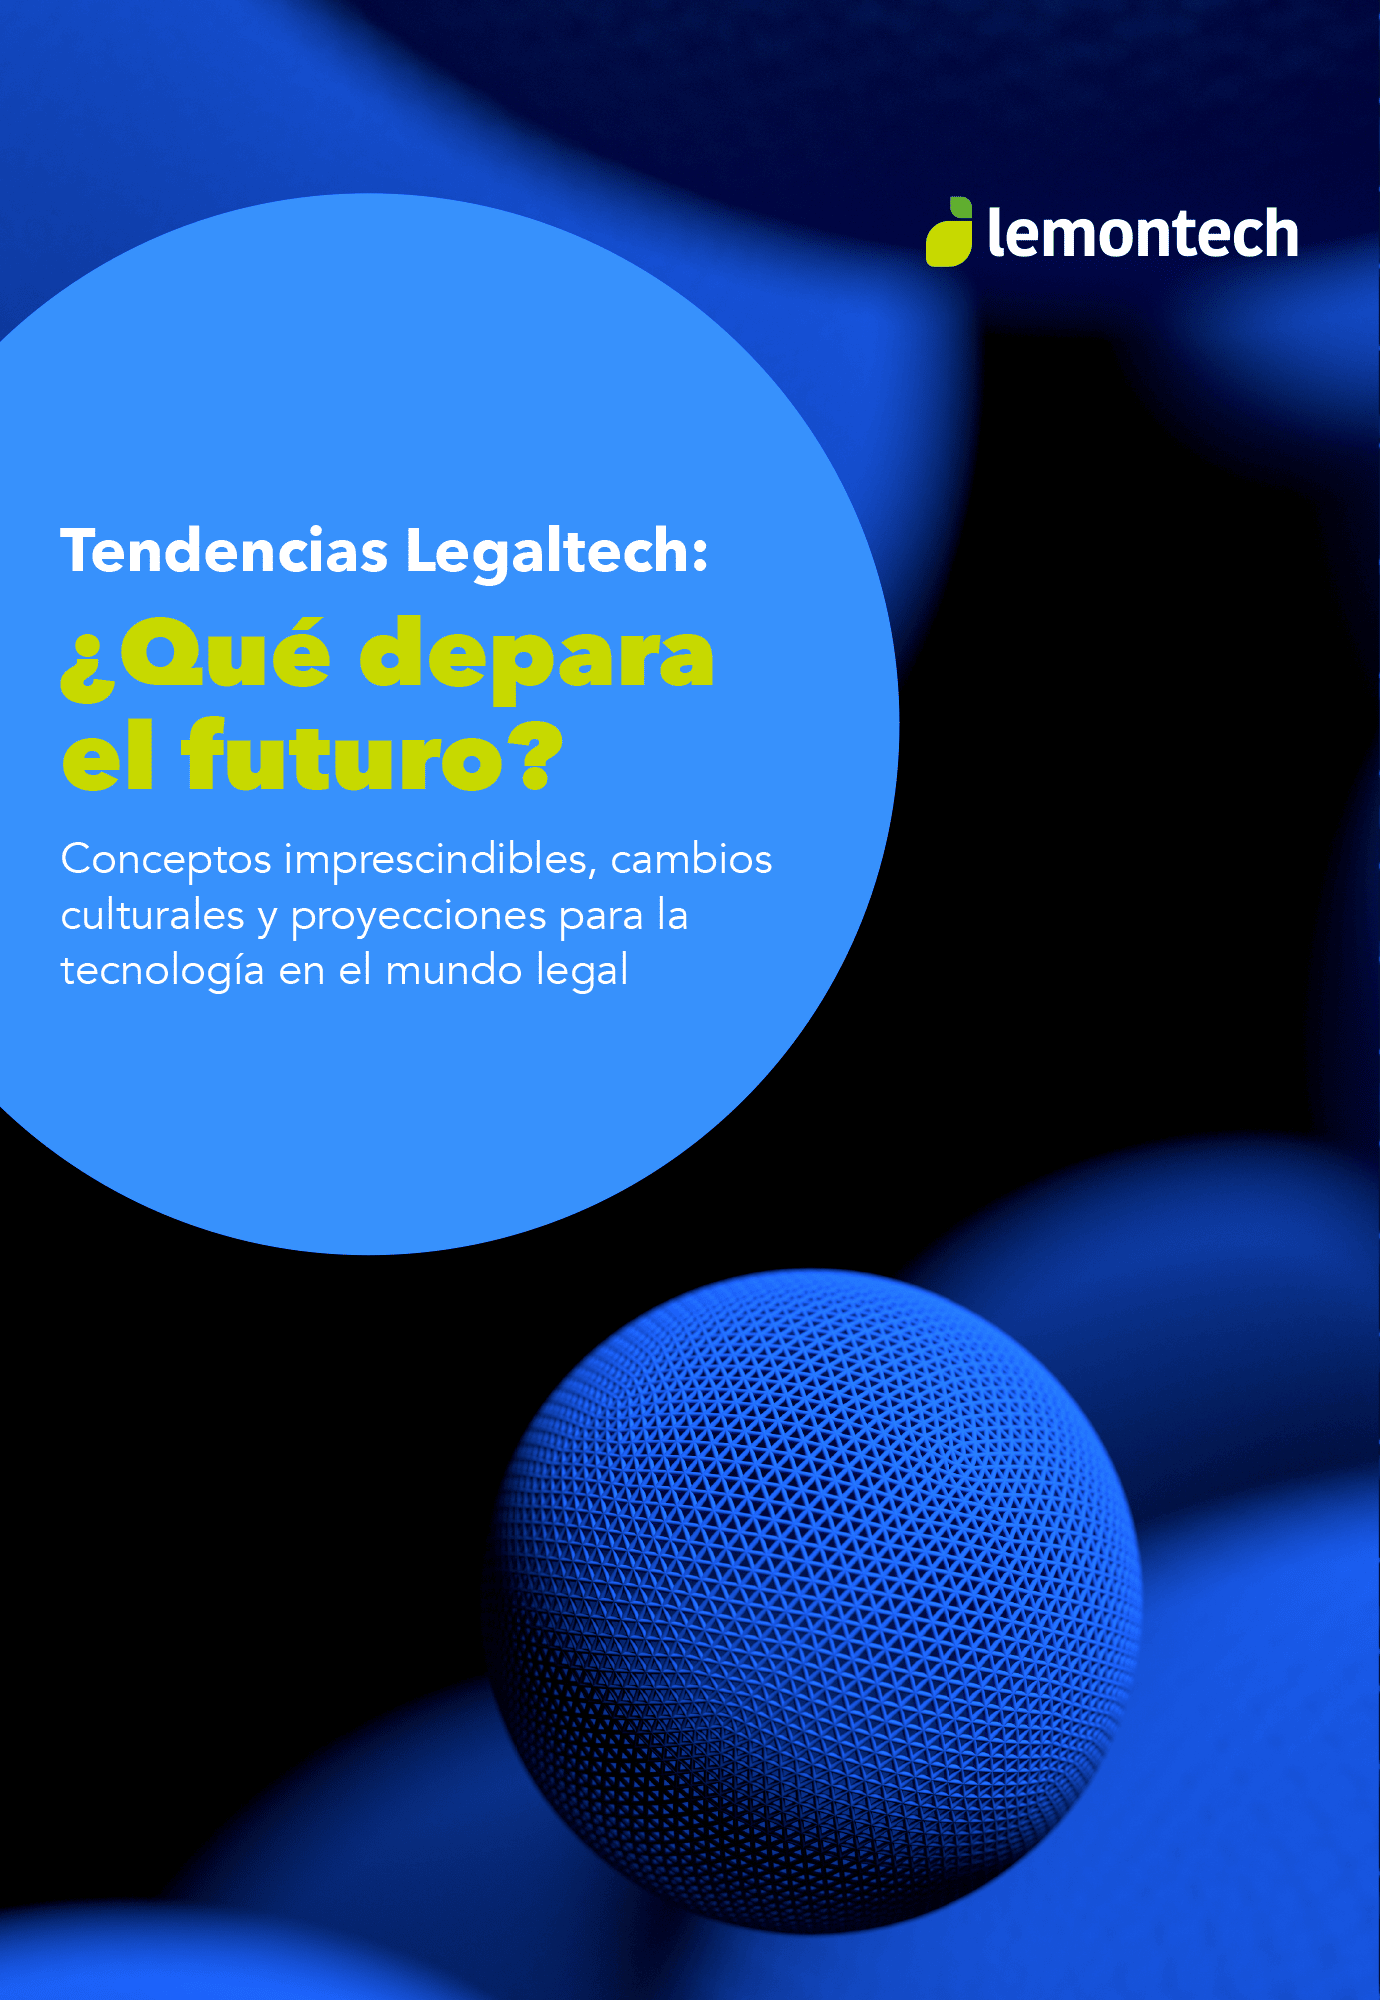 LMN - Tendencias Legaltech